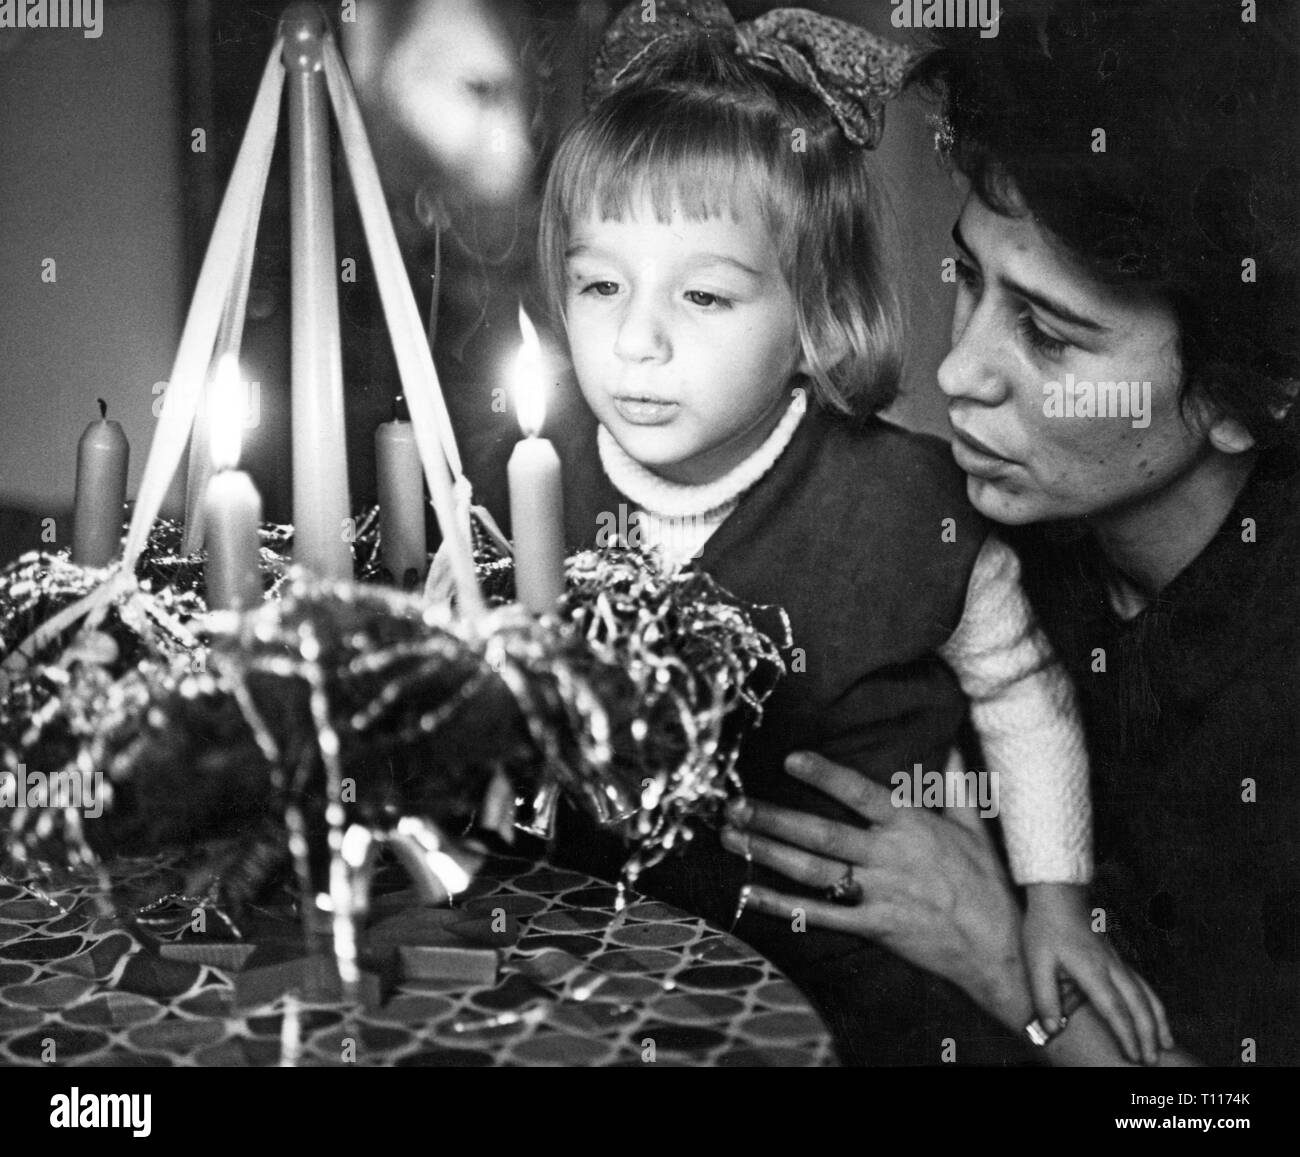 Weihnachten, Advent, eine Frau und ihre Förderung - Tochter mit einem Adventskranz, Berlin-Hohenschoenhausen, 4.12.1961, Additional-Rights - Clearance-Info - Not-Available Stockfoto